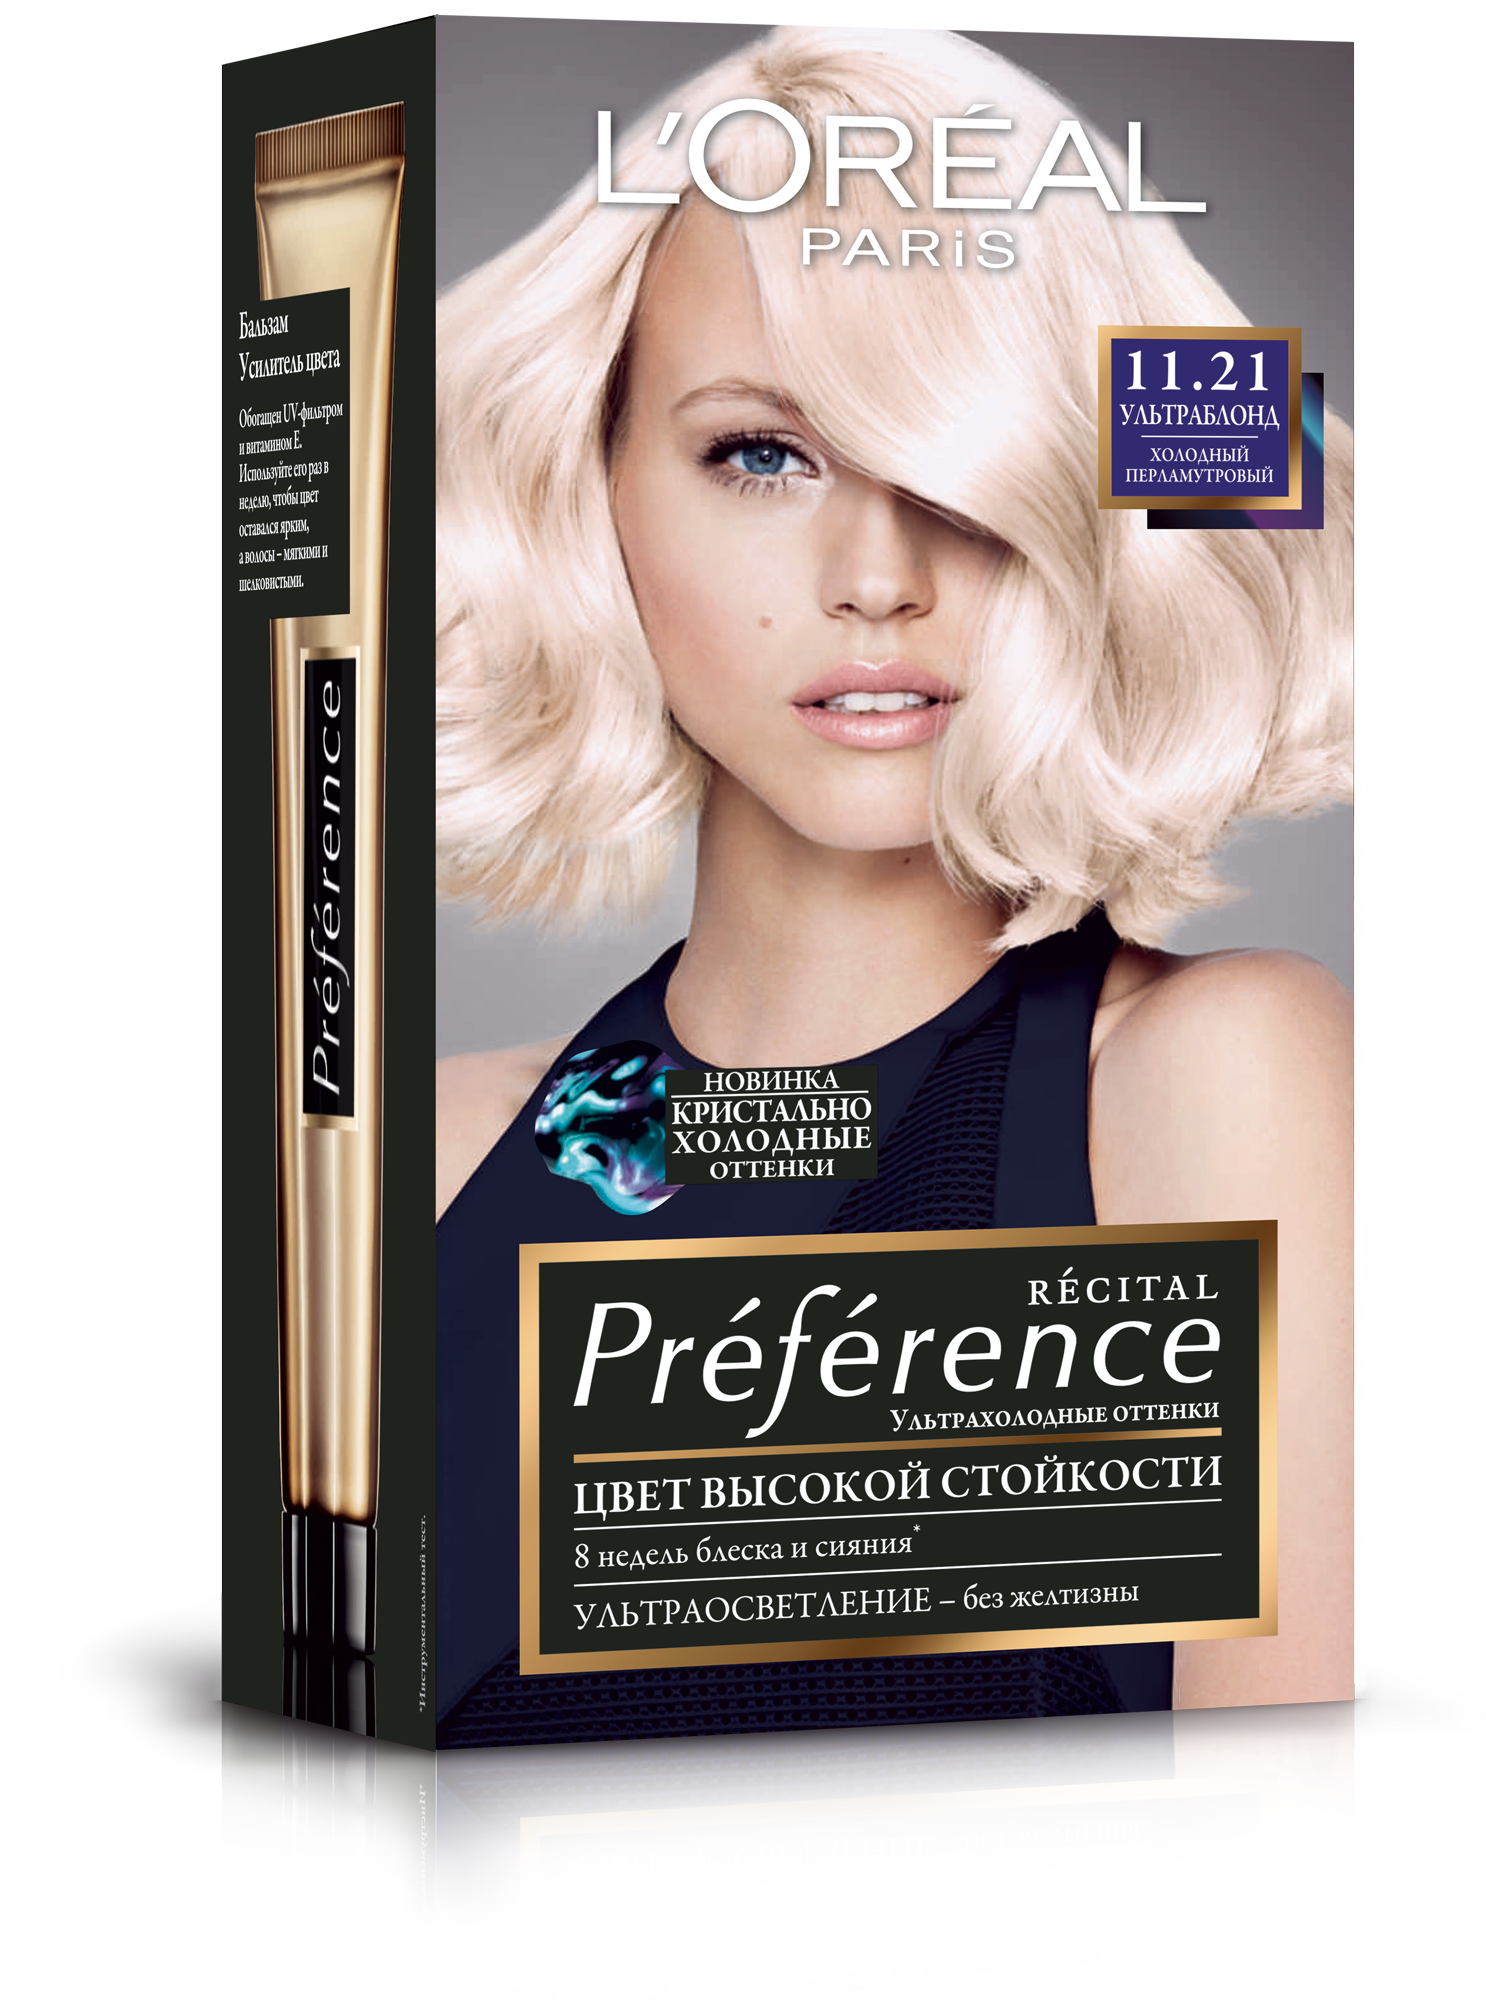 Краска для волос L’Oréal Paris Preference, тон 11.21 (Холодный перламутровый), 174 мл (A8438700) - фото 1